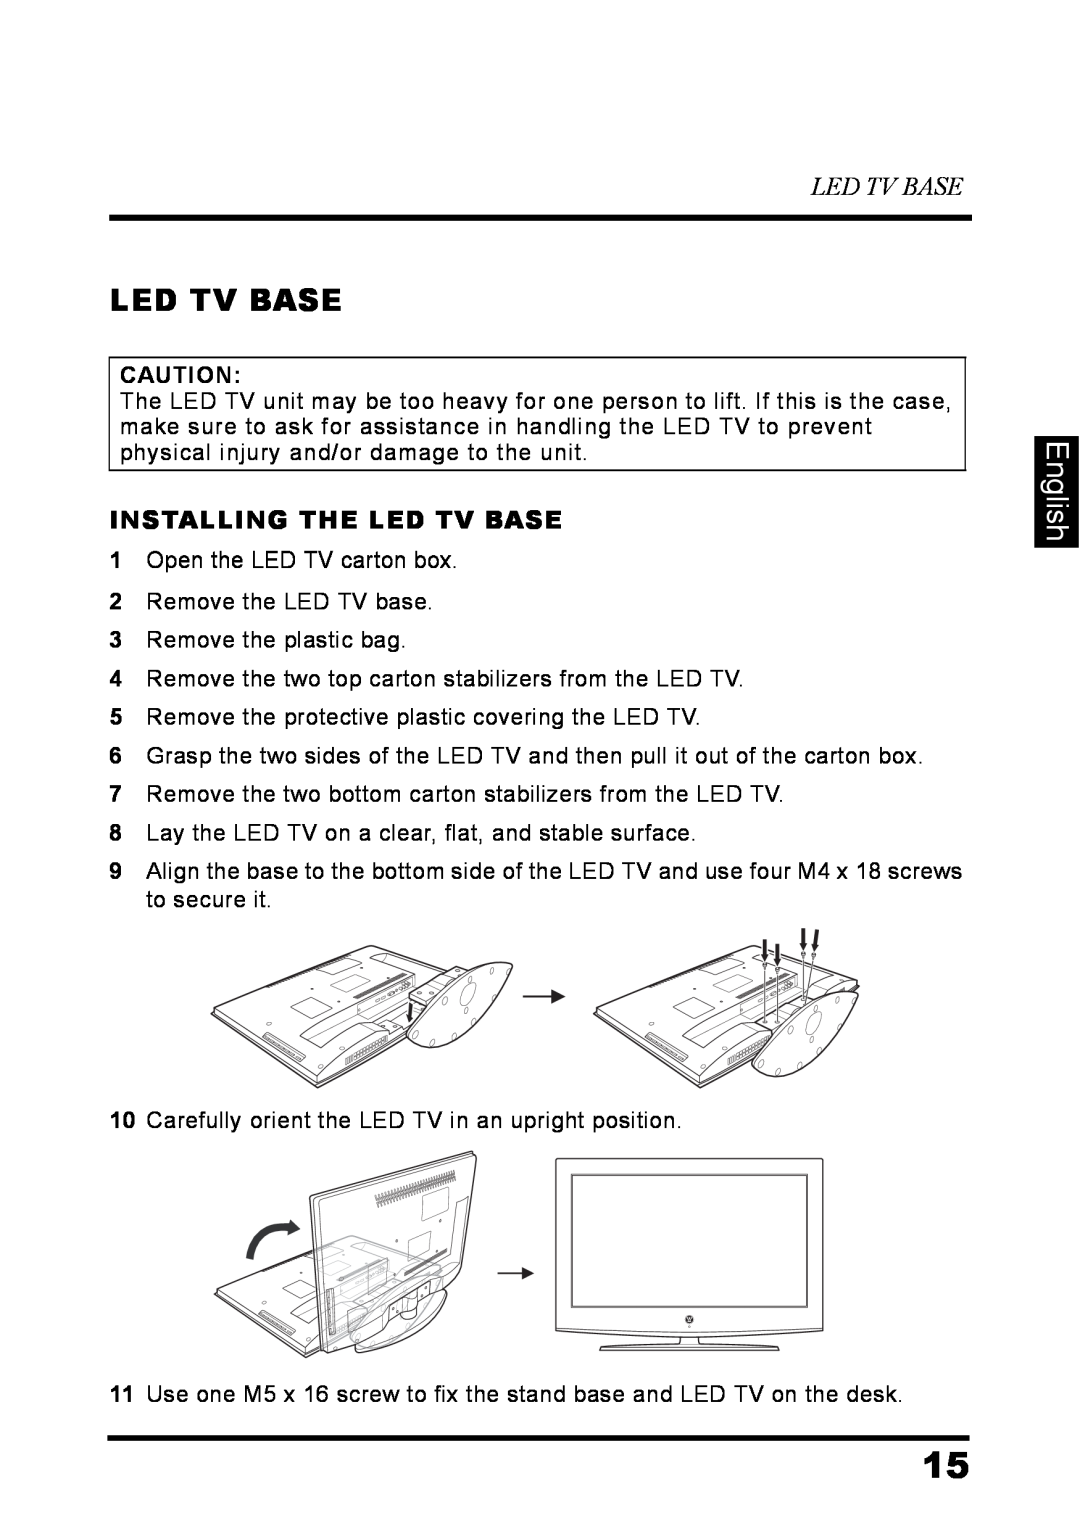 Westinghouse LD-3237 user manual English, Installing The Led Tv Base 